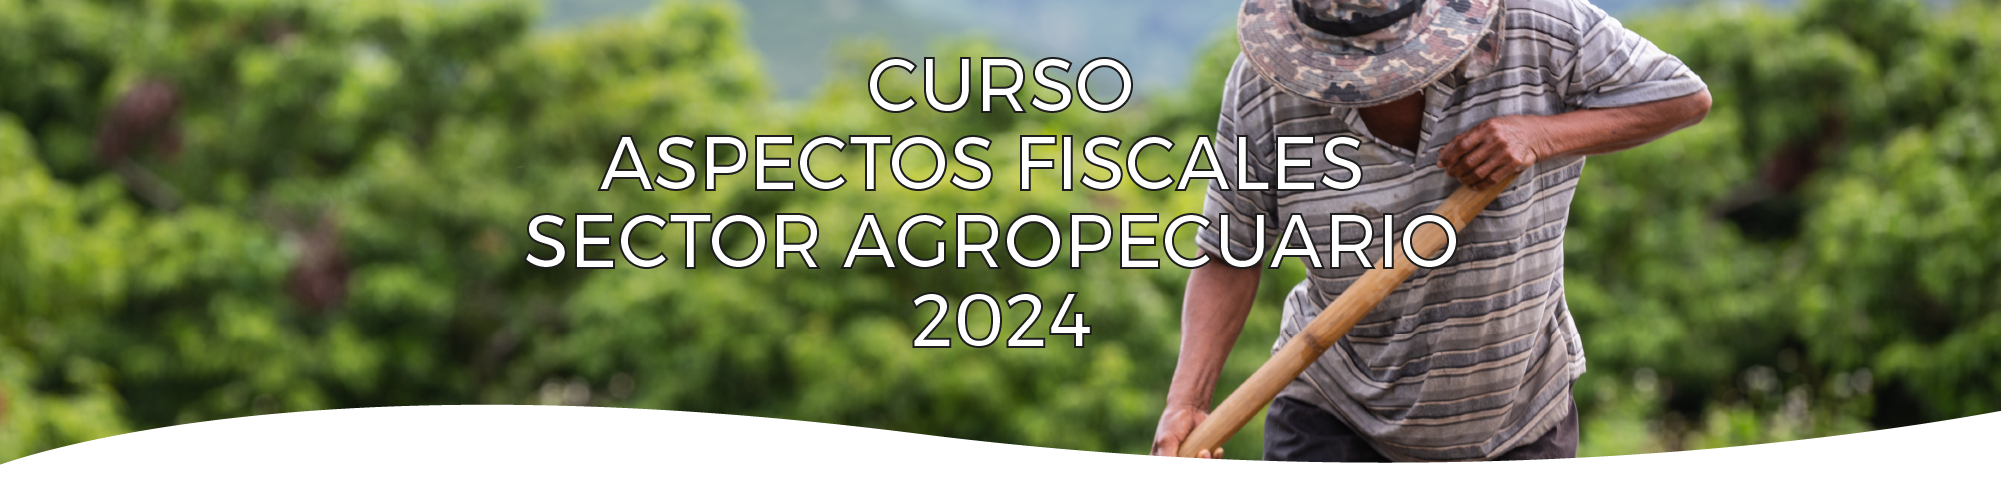 Aspectos fiscales del Sector Agropecuario 2024